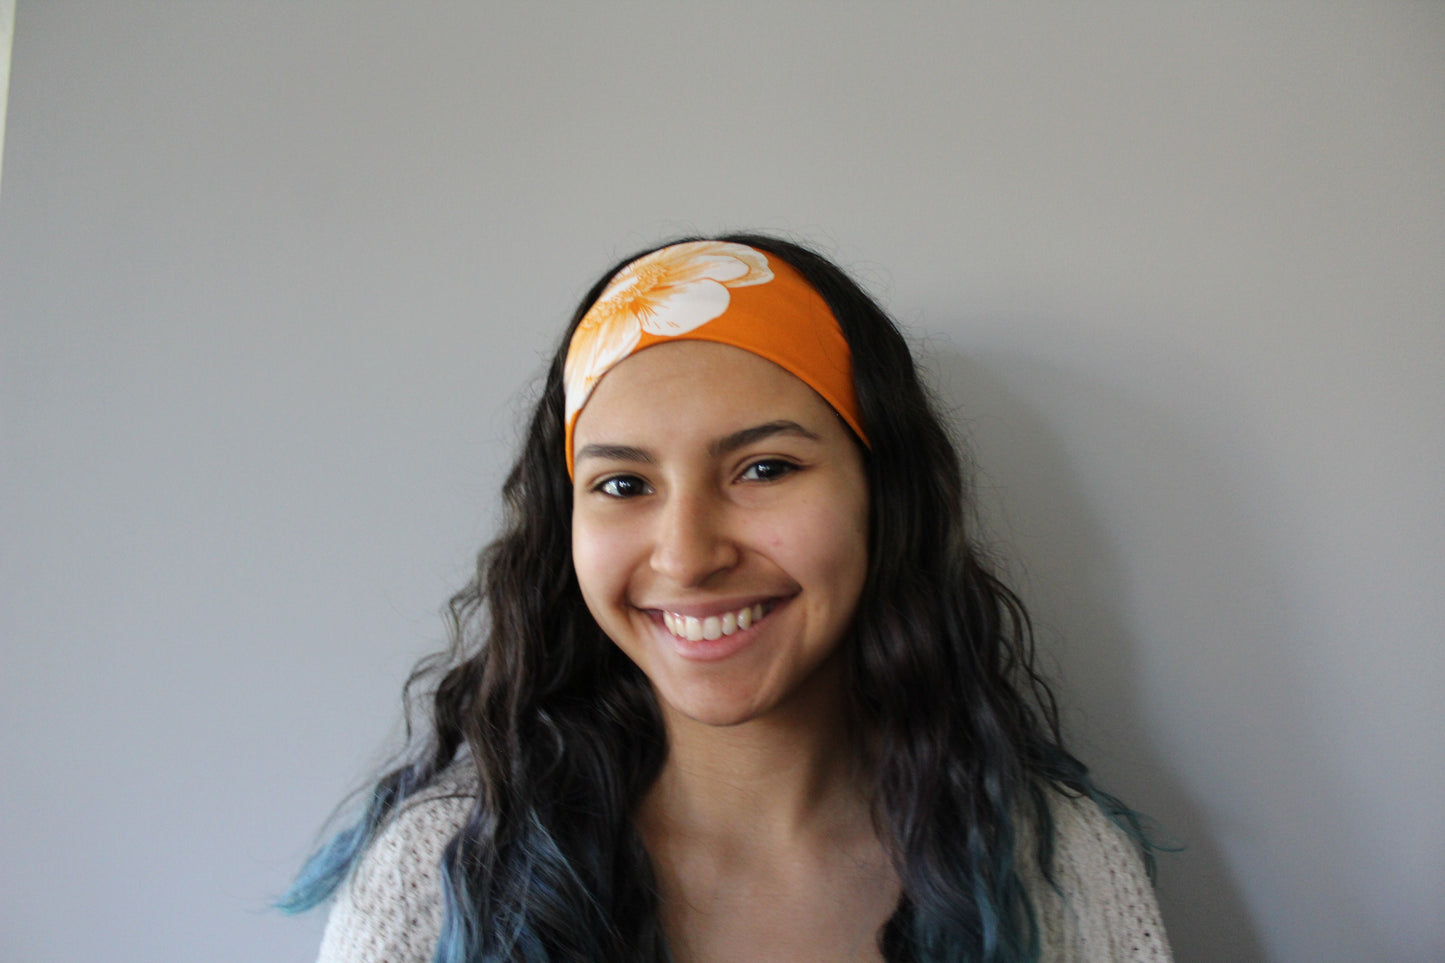 Orange Floral Headband